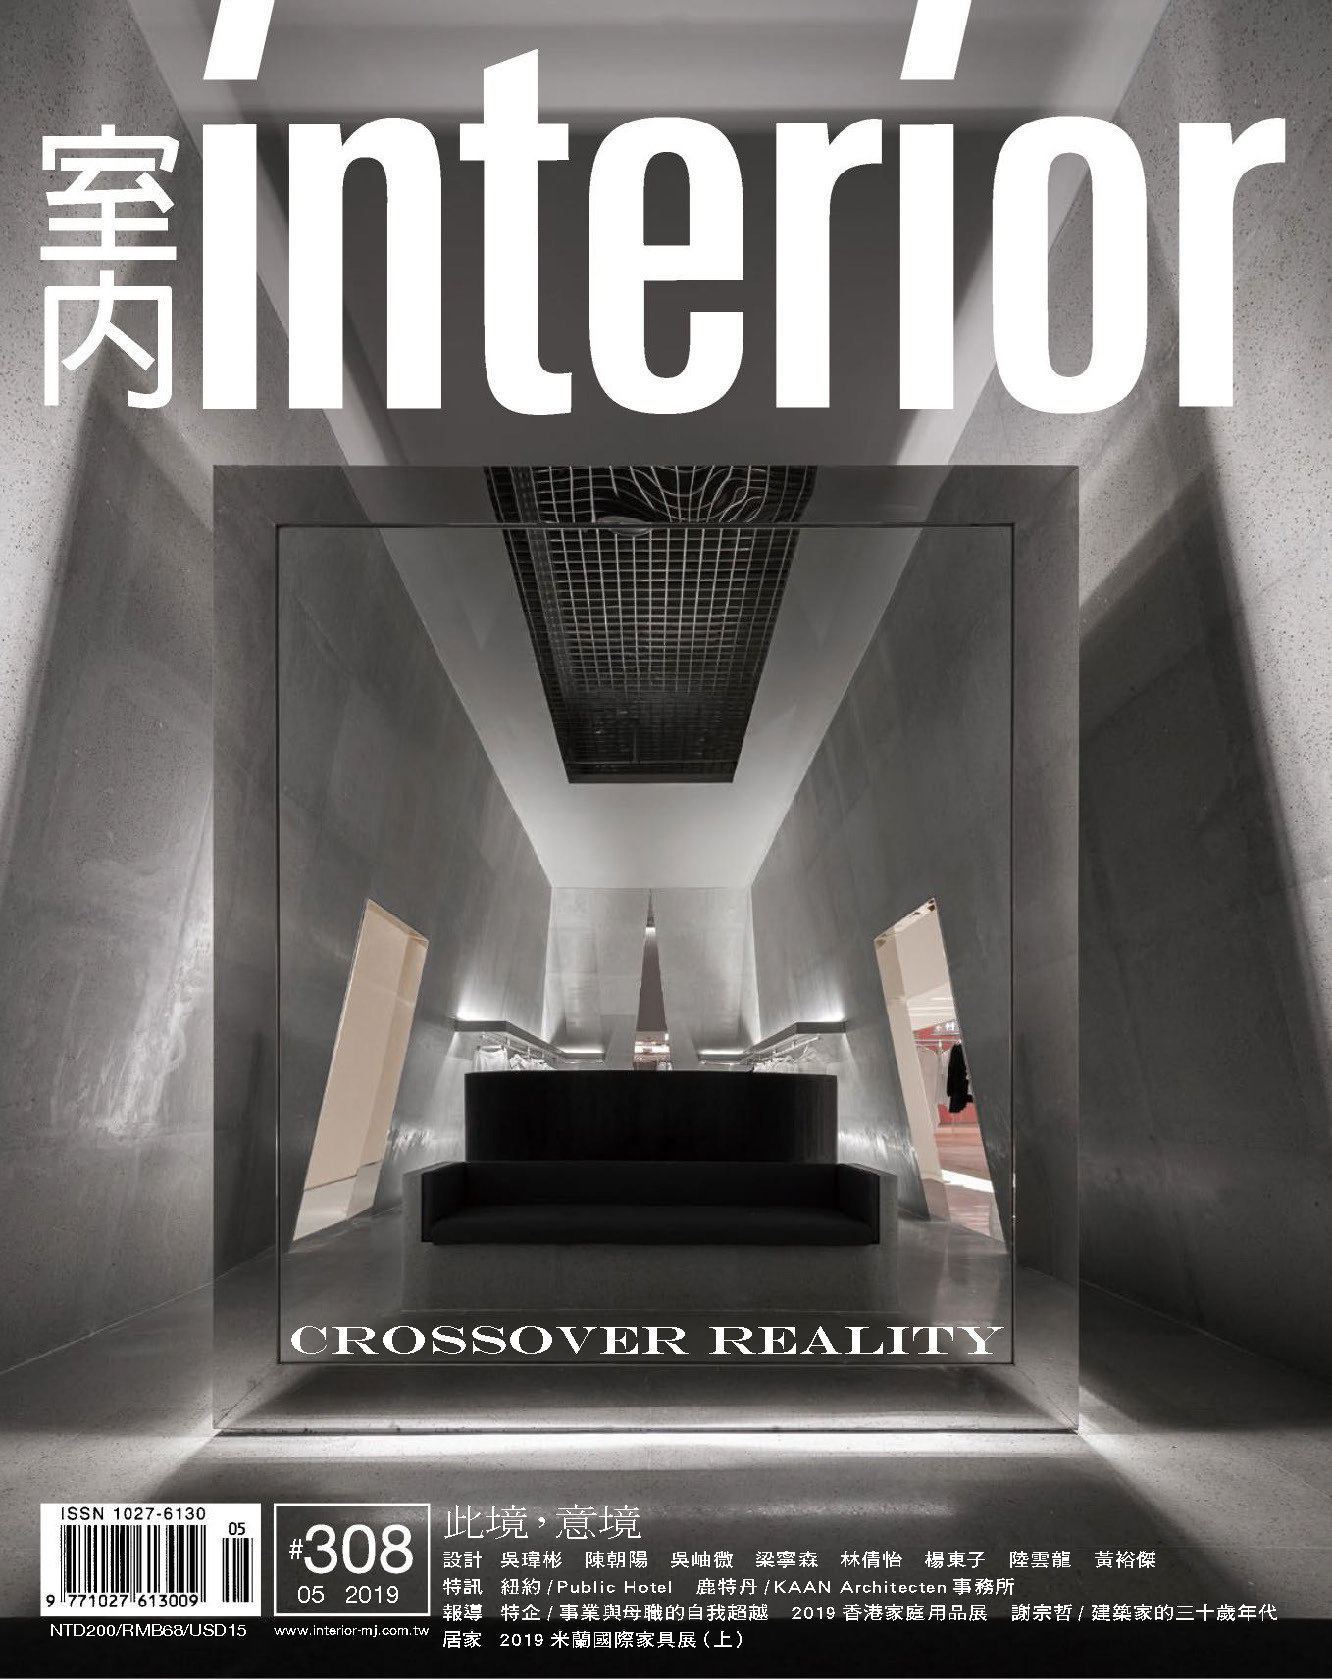 《室内Interior》台湾版室内时尚家居杂志2019年05月号